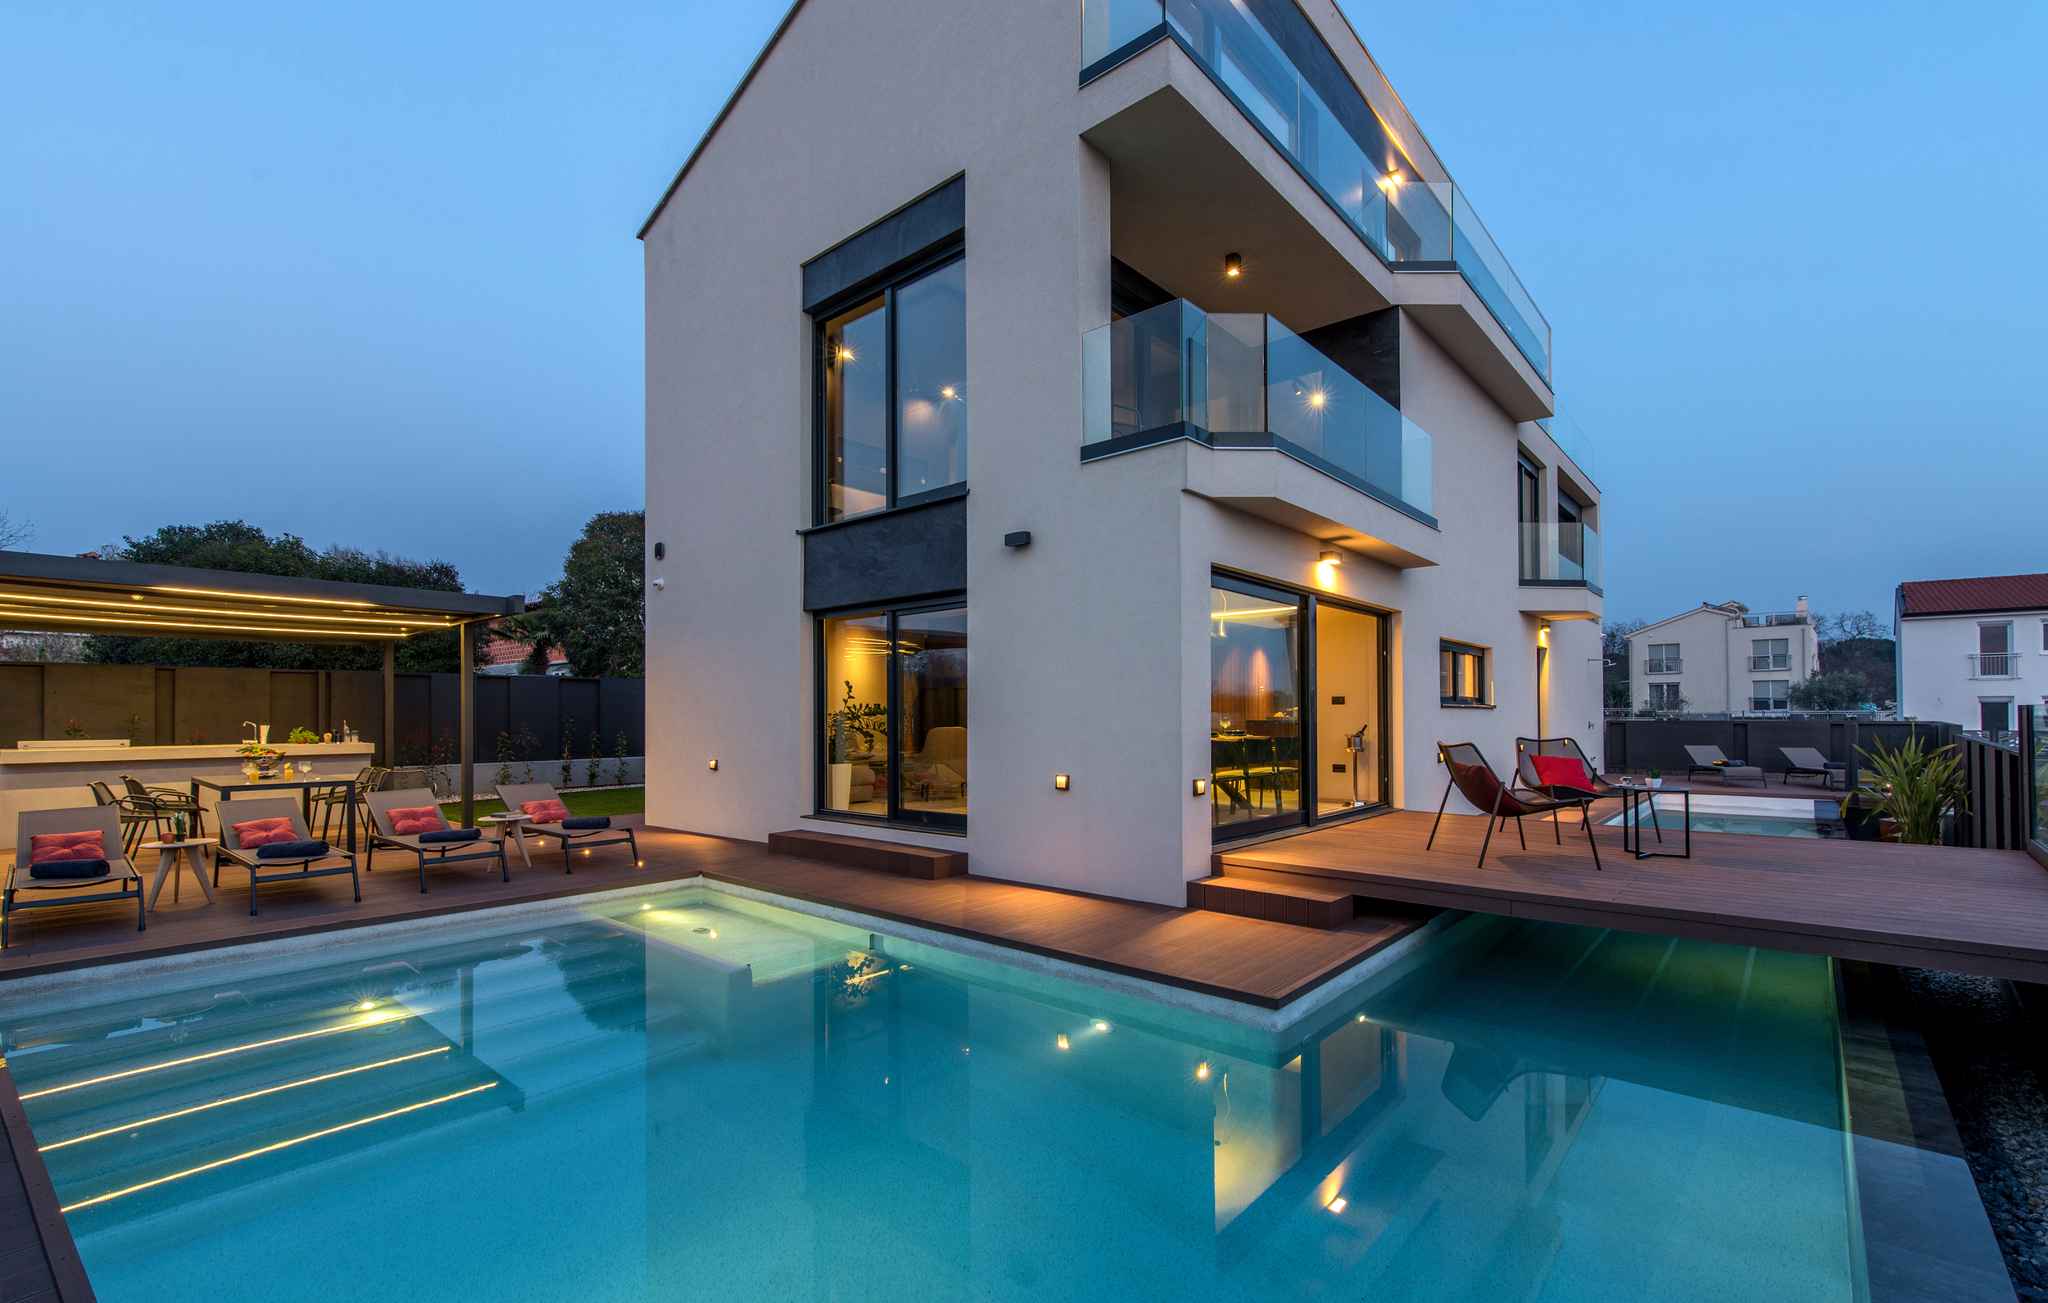 Villa mit Pool in Strandnähe Ferienhaus in Kroatien